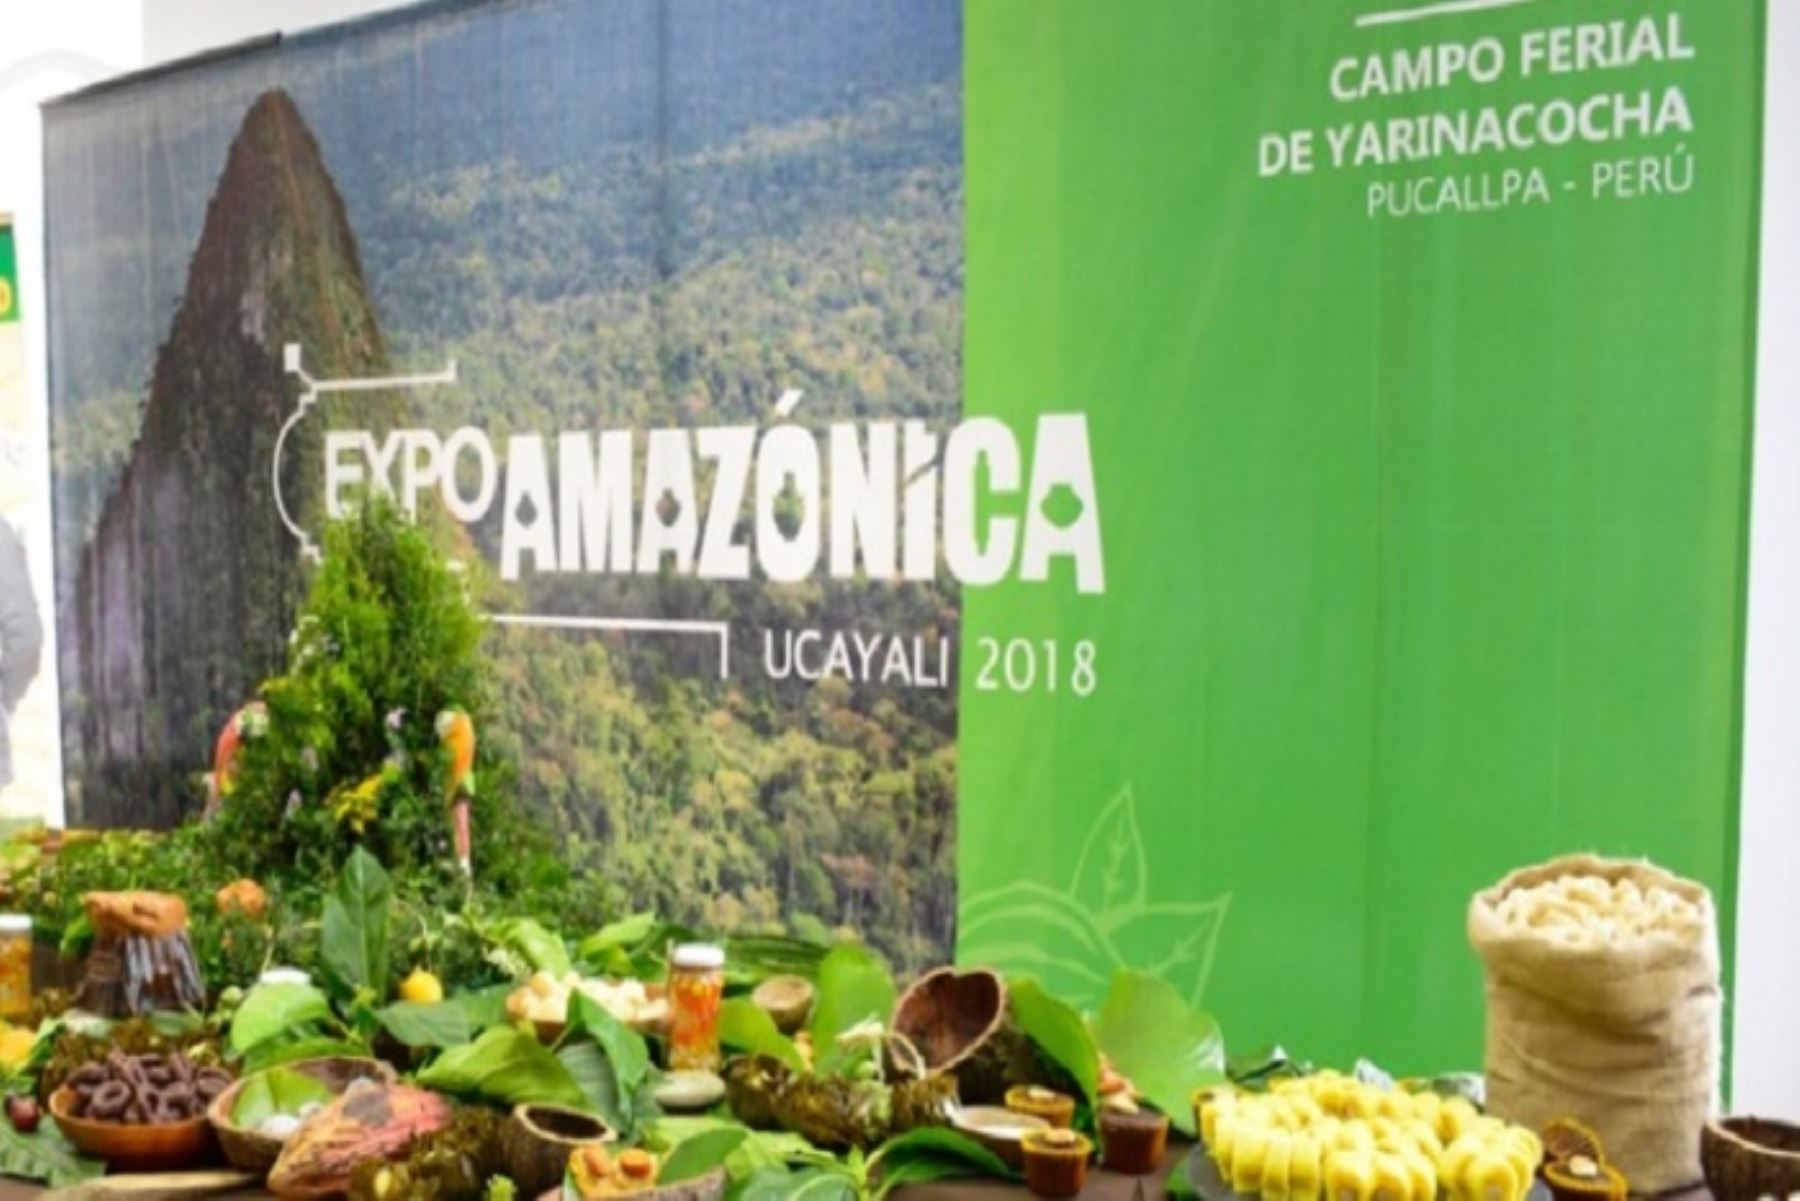 Expo Amazónica 2018, e efectuará del 9 al 12 de agosto en la ciudad de Pucallpa, región Ucayali. ANDINA/Difusión